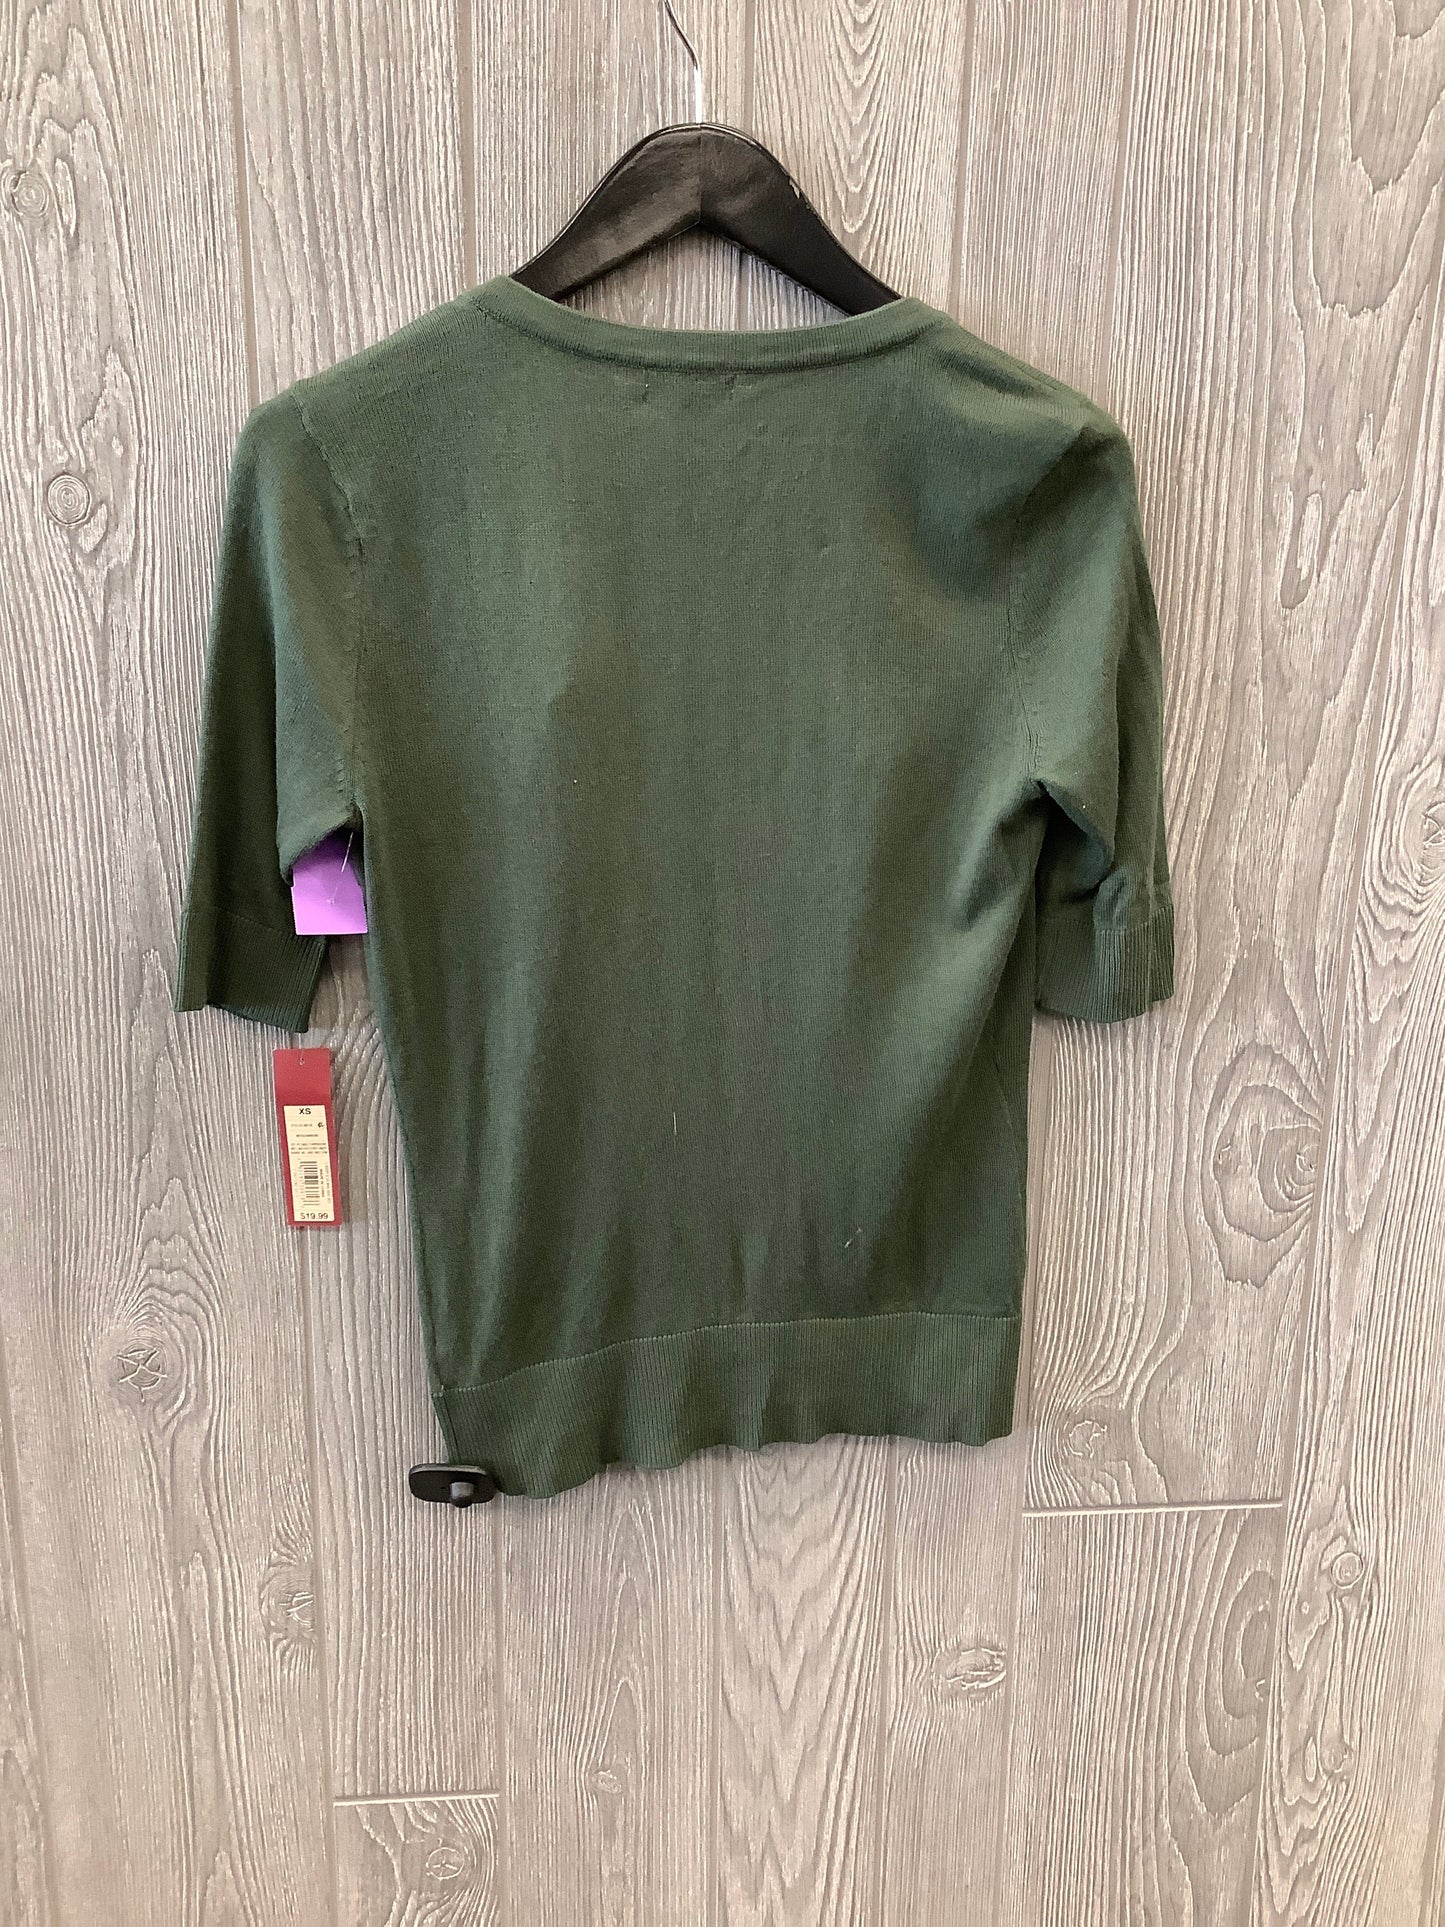 Green Sweater Cardigan Merona, Size Xs